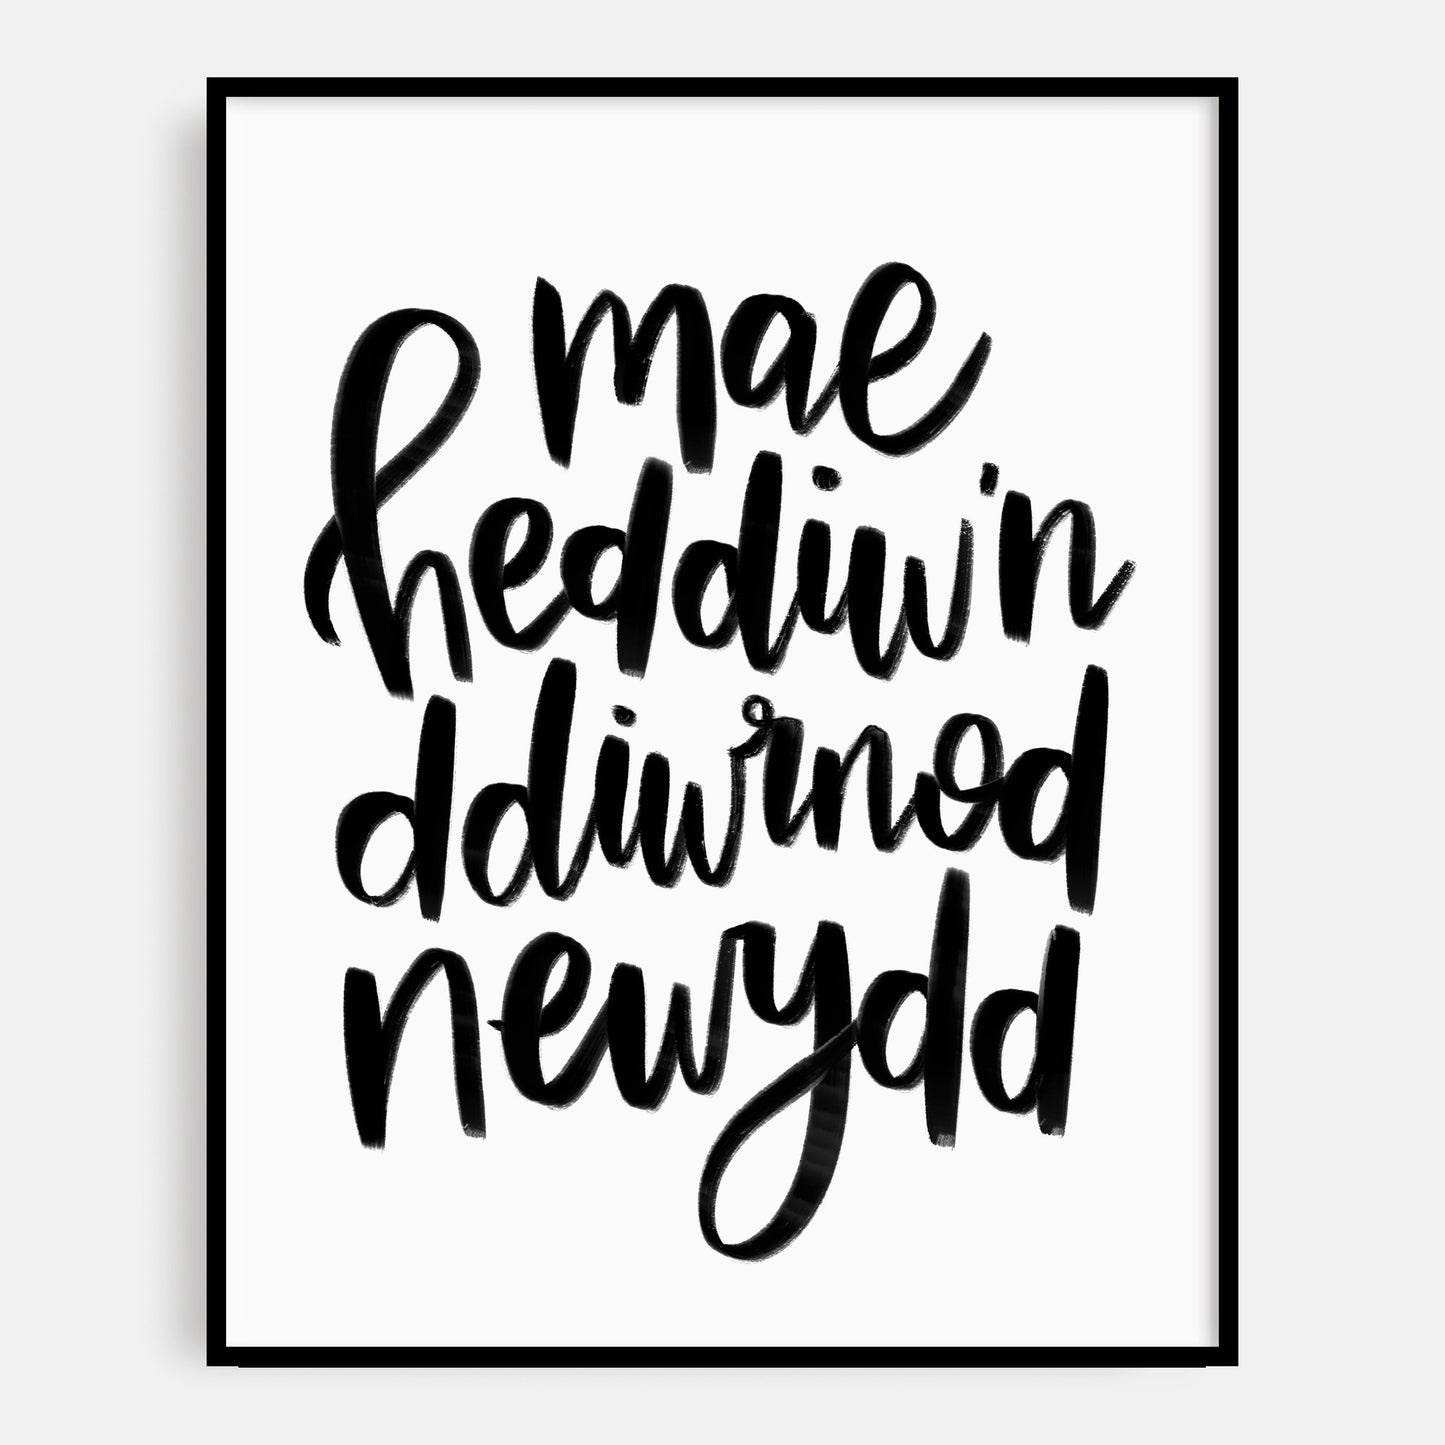 Mae Heddiwn Ddiwrnod Newydd Welsh Art Print 10 x 8